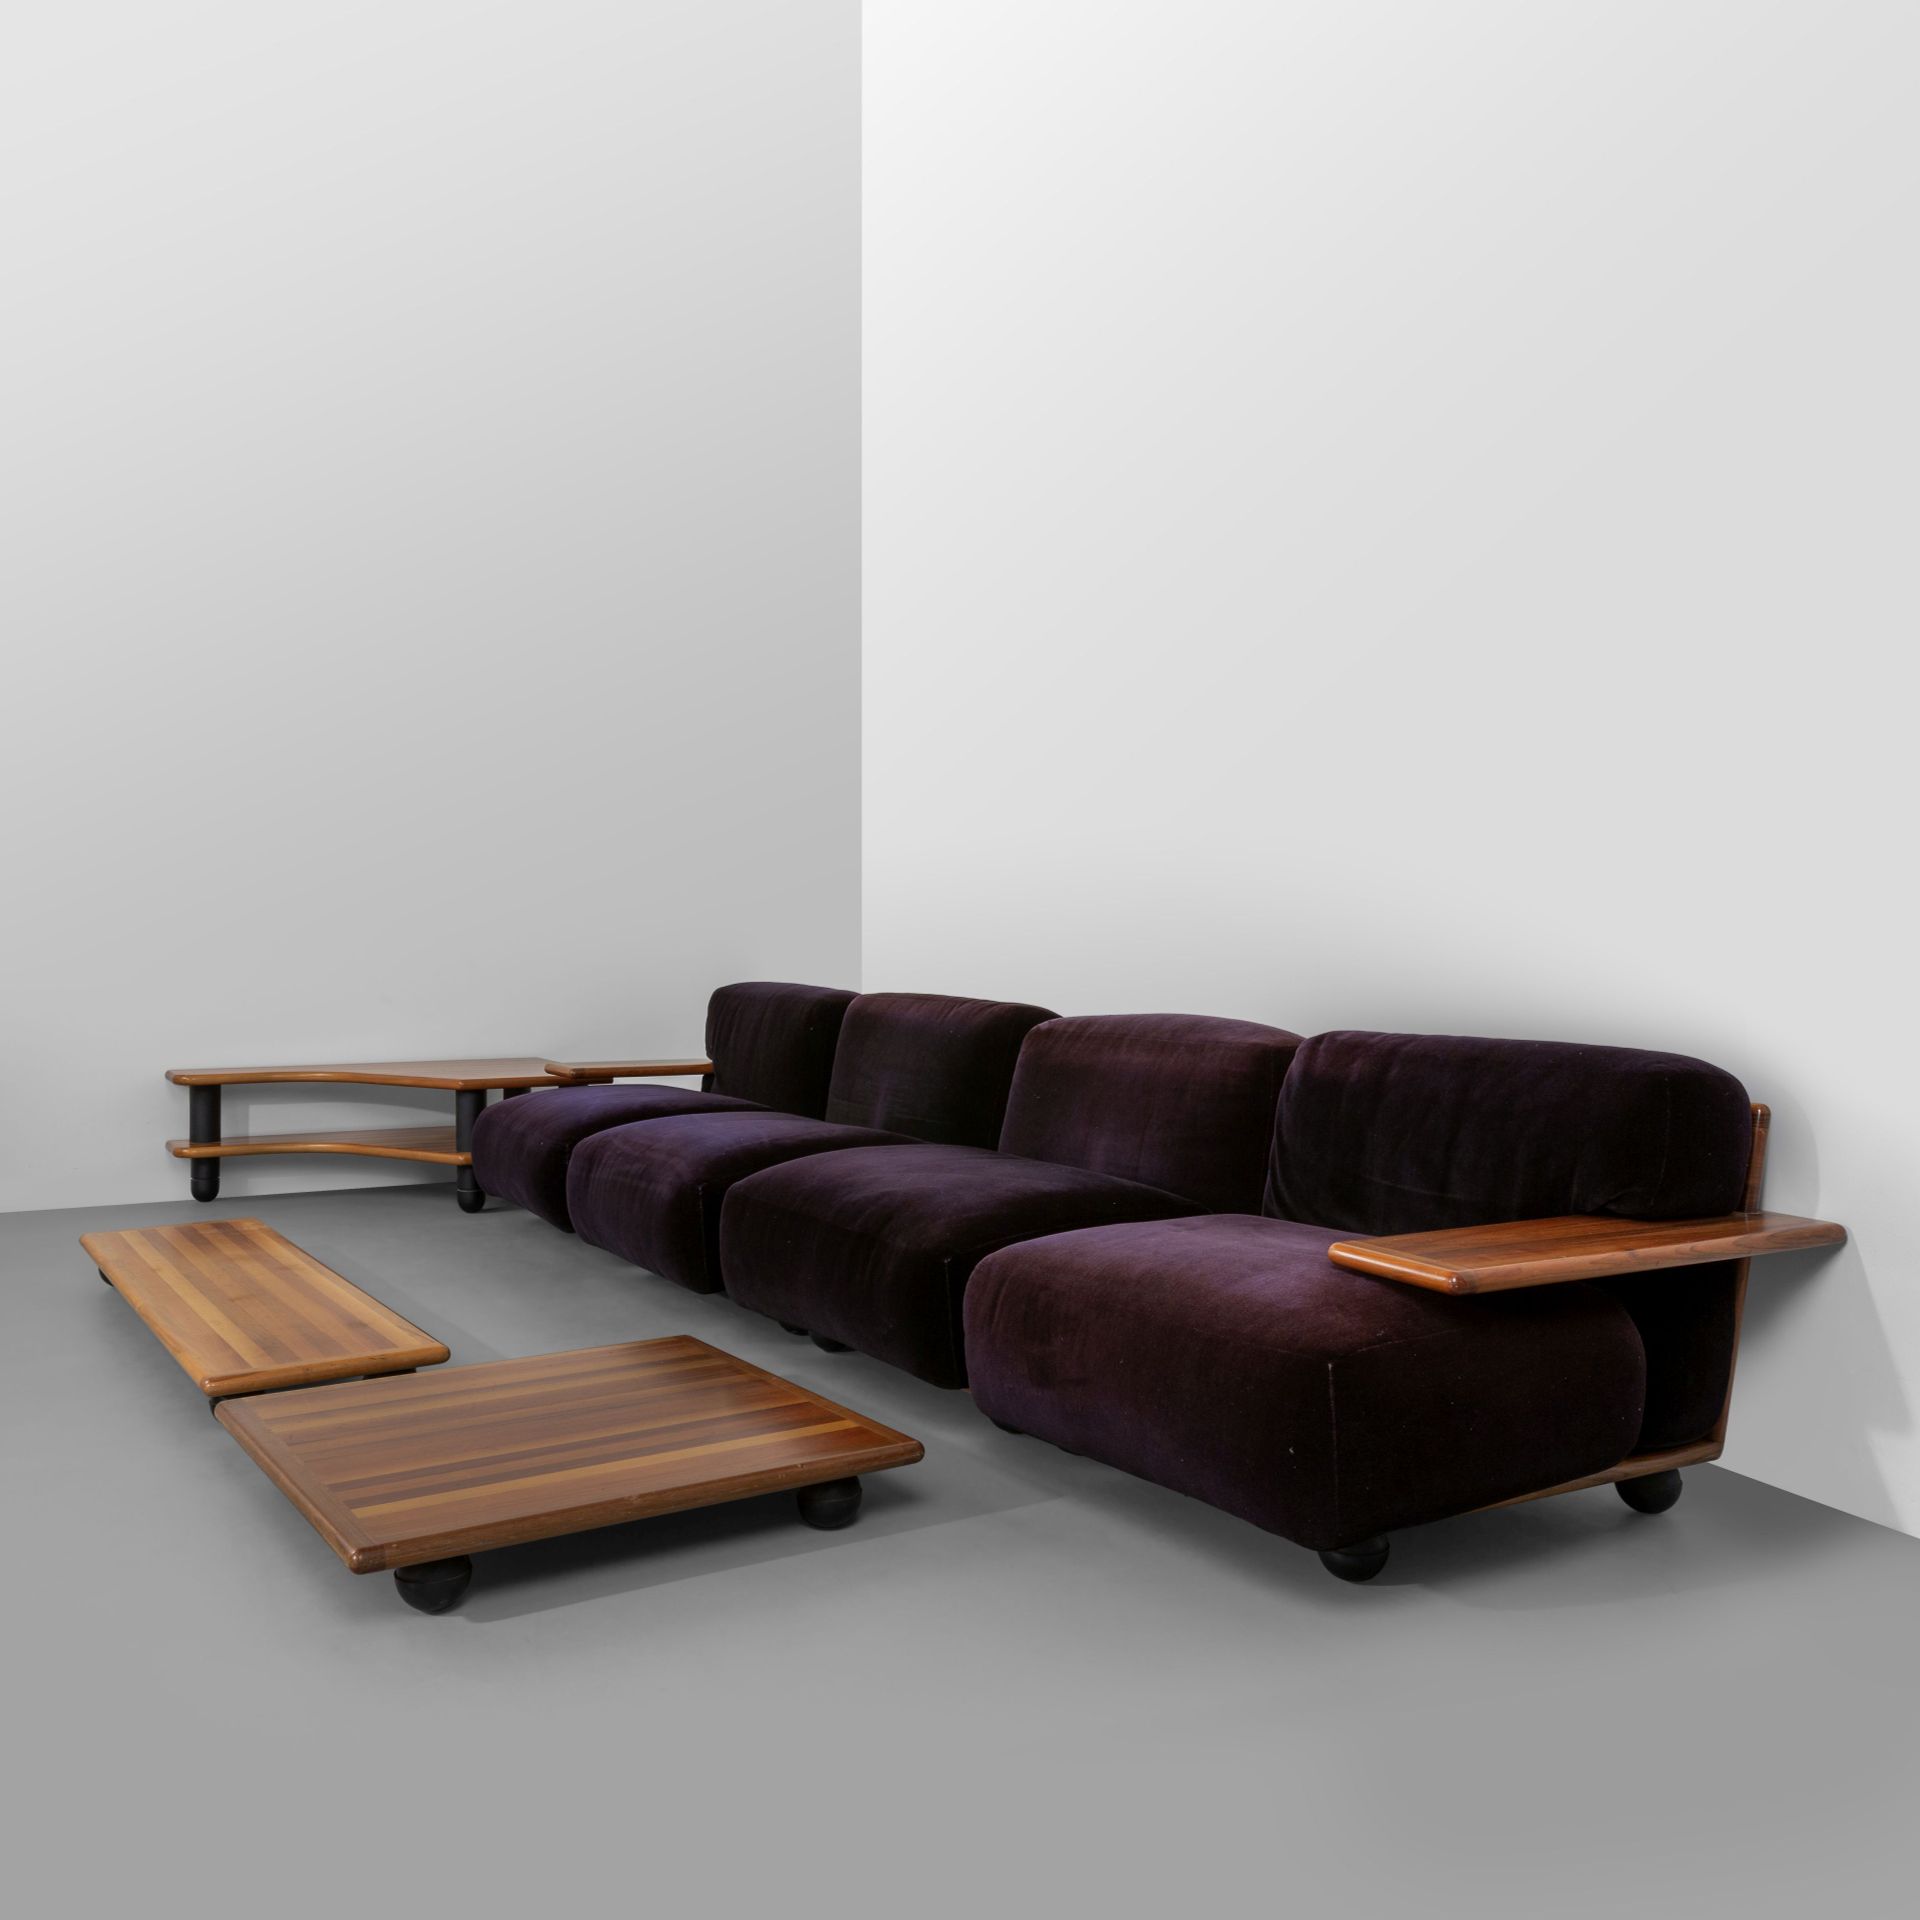 BELLINI MARIO Mario Bellini Cassina 1971。 
Pianura" 系列的组合沙发 
由四张扶手椅和三张咖啡桌组成。
胡桃木&hellip;